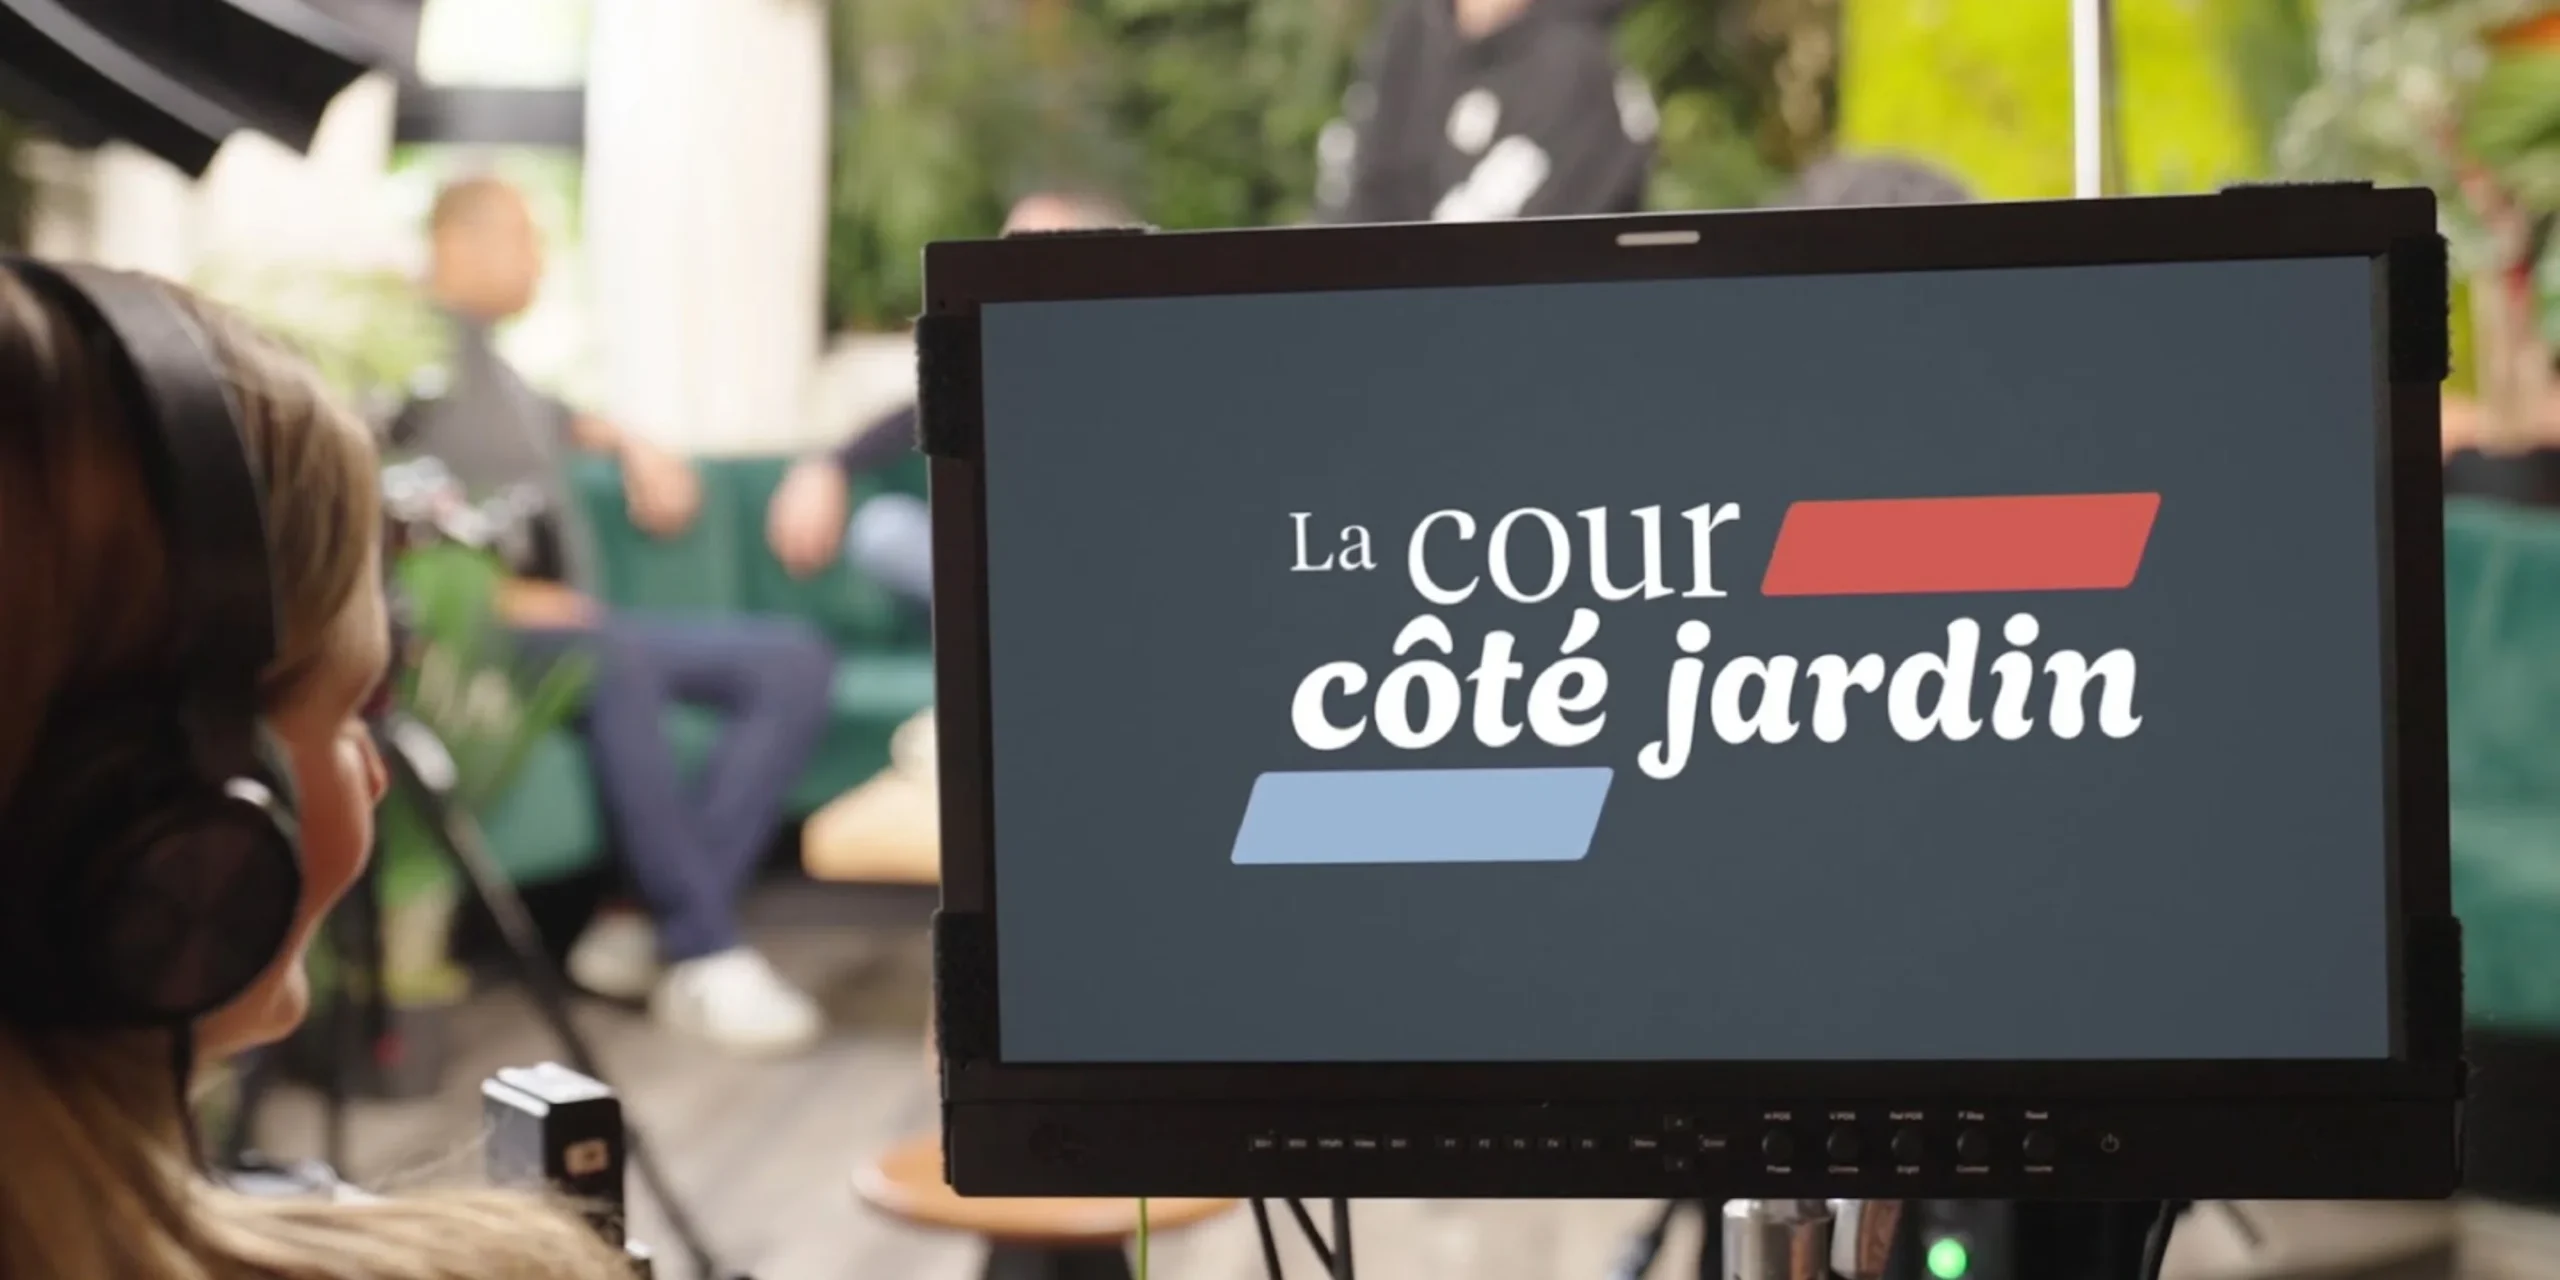 Barreau du Québec: Launch of a Unique Web Series